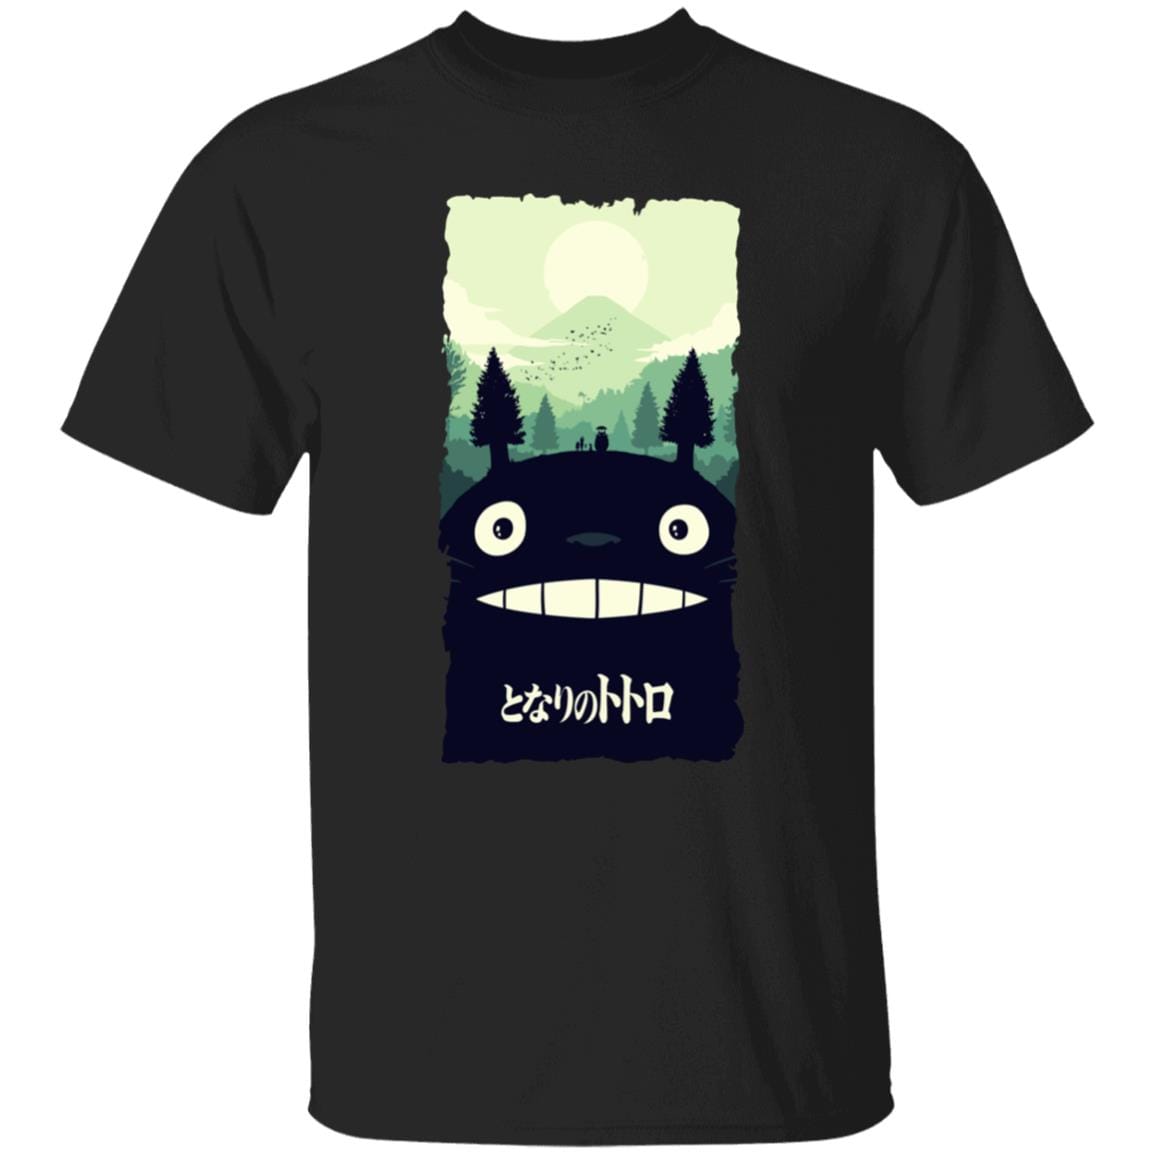 My Neighbor Totoro – Totoro Hill T Shirt Ghibli Store ghibli.store